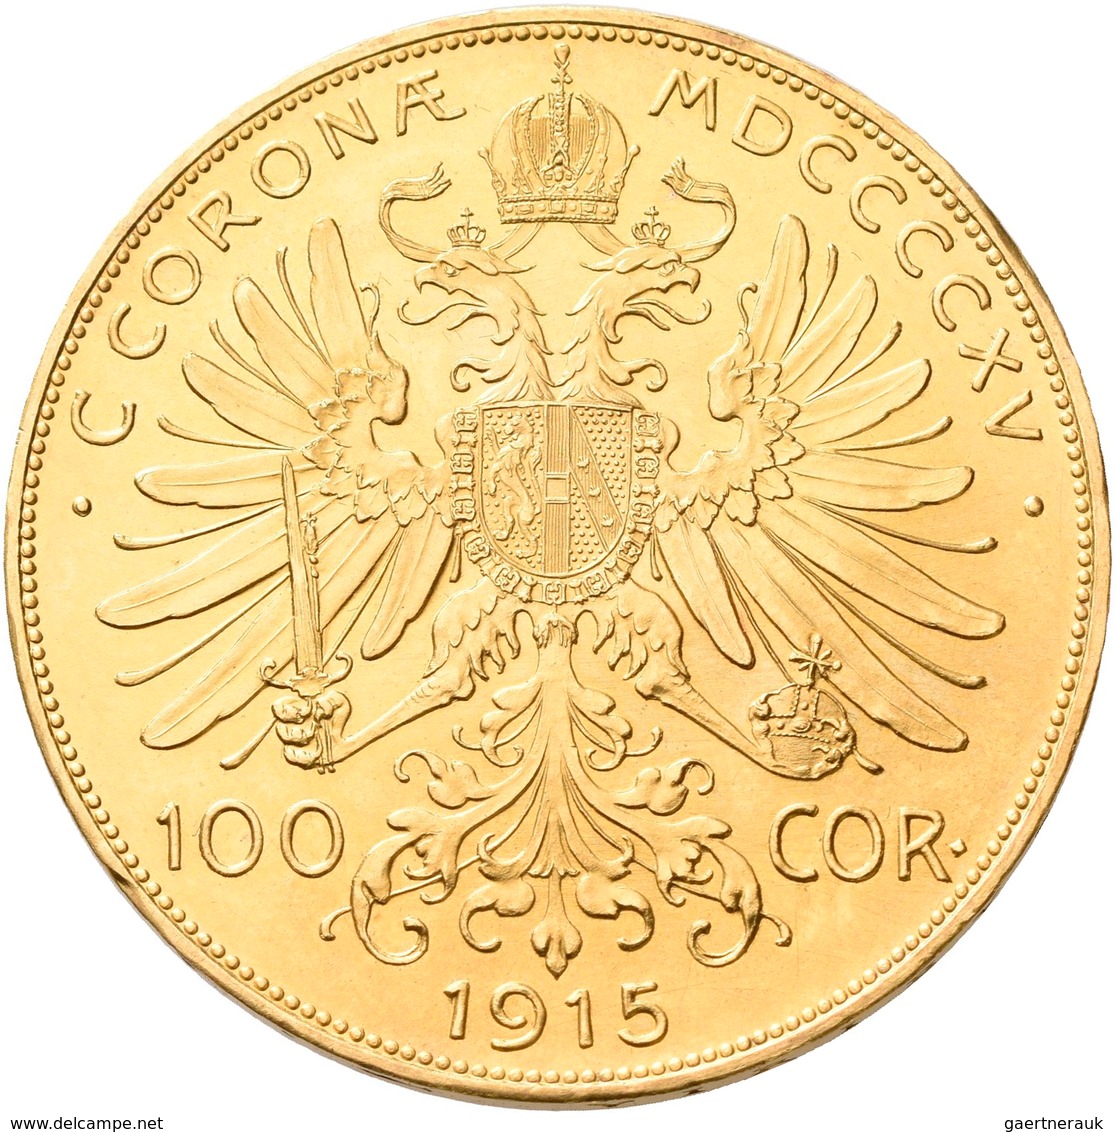 Österreich - Anlagegold: Franz Joseph I. 1848-1916: 100 Kronen 1915 (NP), KM# 2819, Friedberg 507R, - Austria